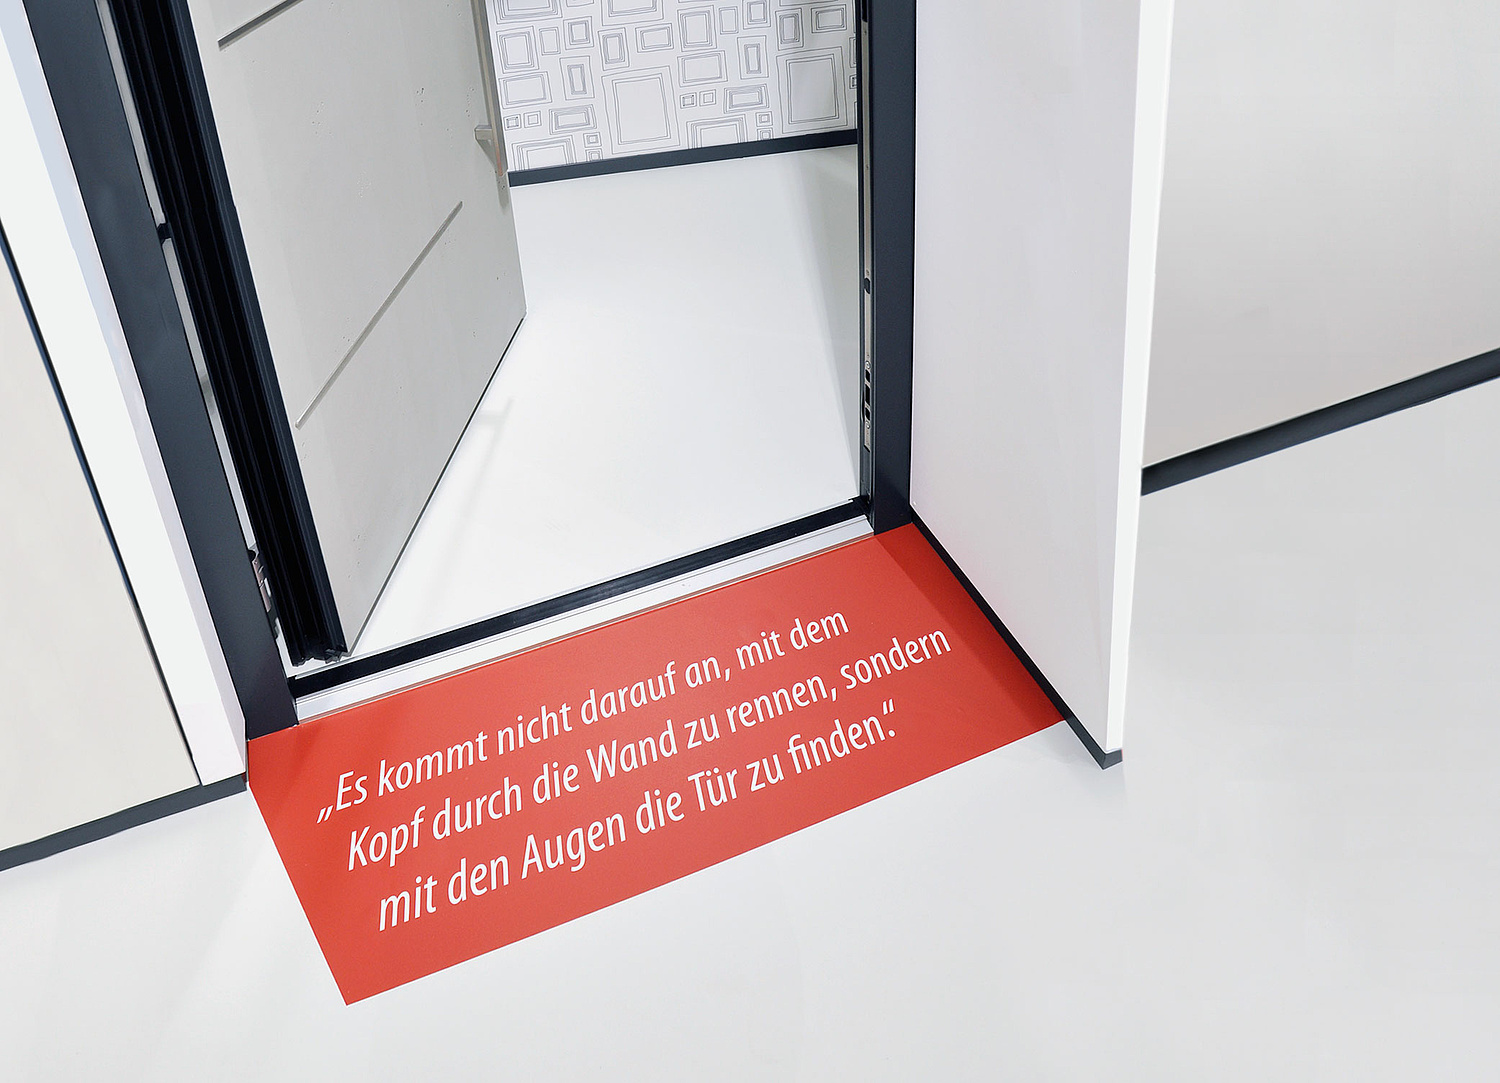 Auf dem Boden aufgebrachte Textflächen lenken den Blick, wie auch die Gedanken des Besuchers in eine neue Richtung. (© Papenfuss | Atelier)